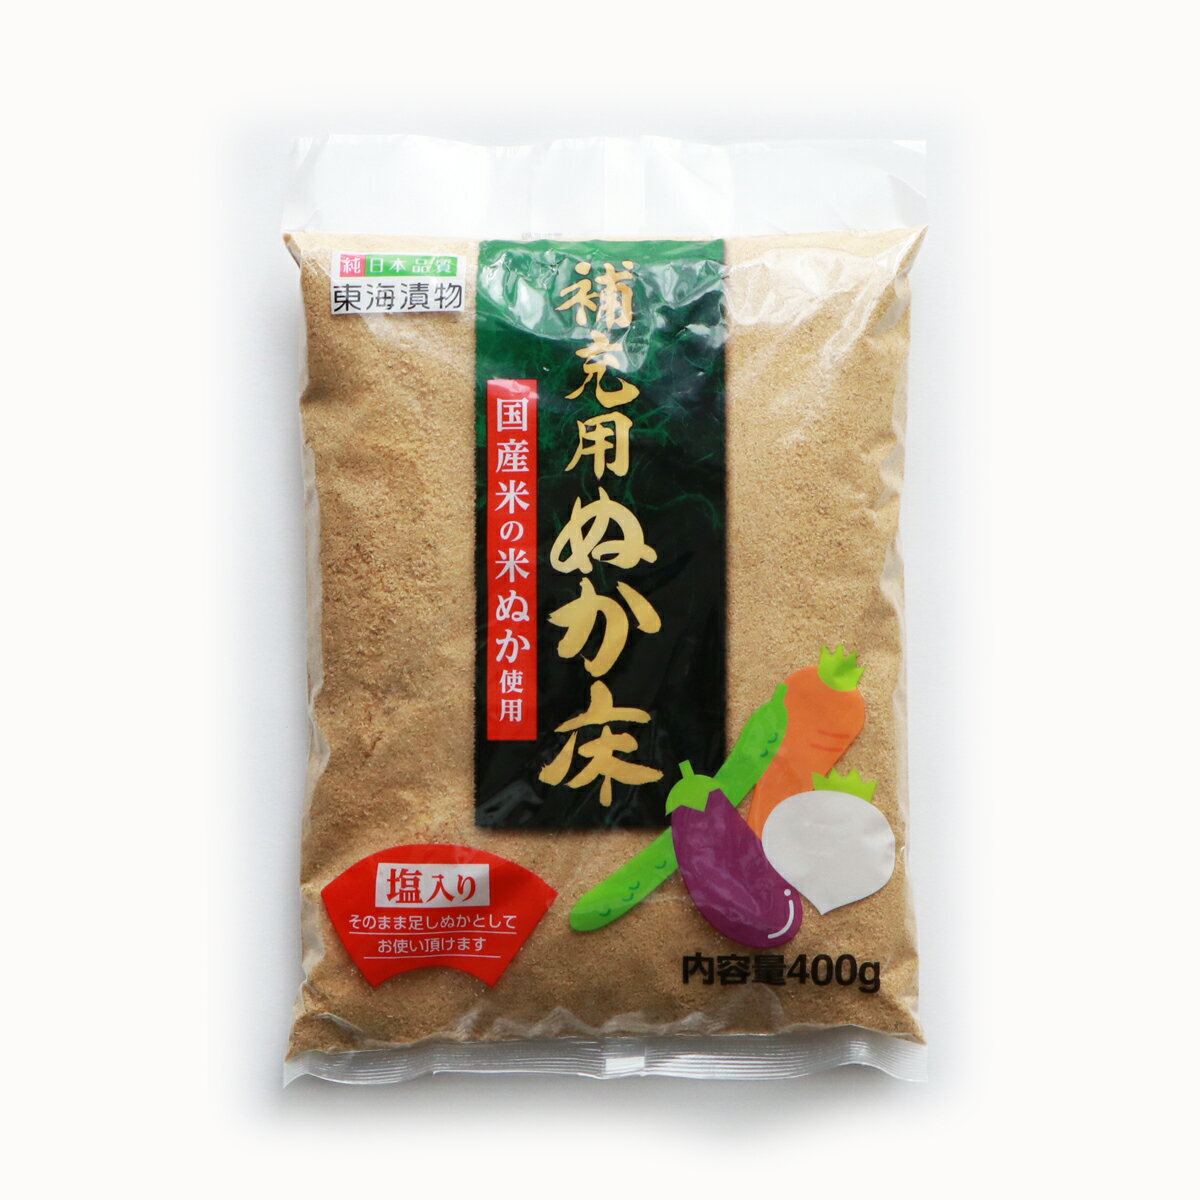 国産米の米ぬか使用 補充用ぬか床 塩入り 内容量400g 24個 12 2 東海漬物株式会社 送料無料